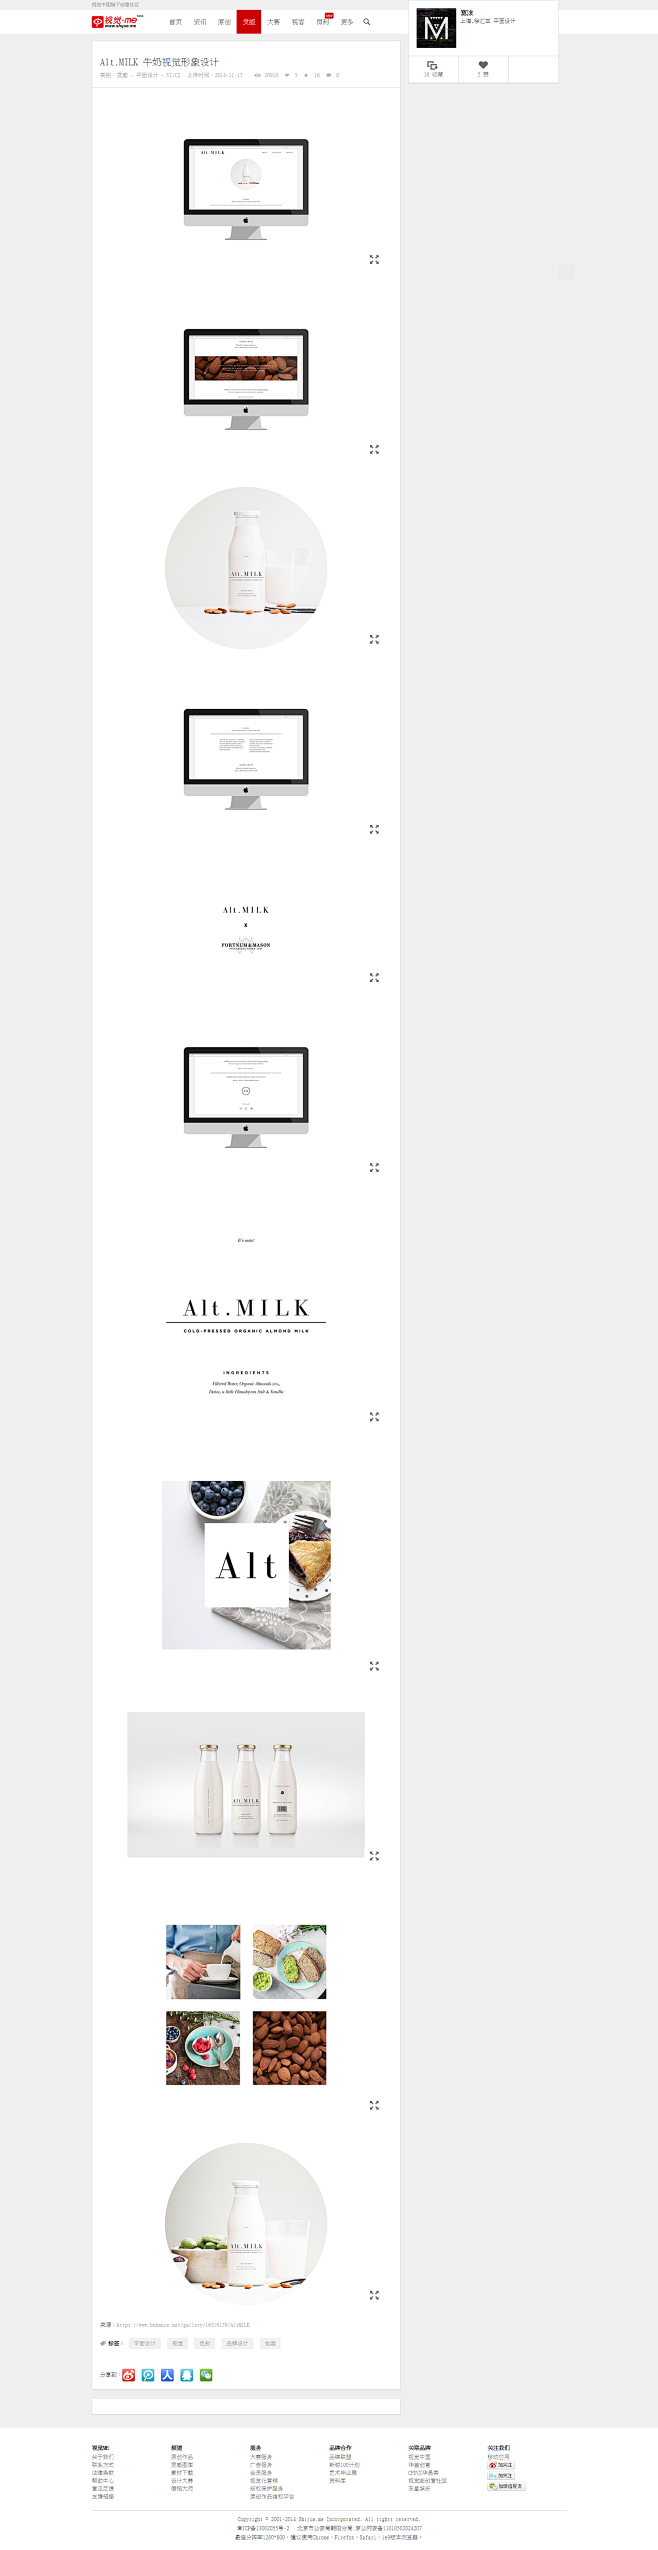 Alt.MILK 牛奶视觉形象设计 | ...